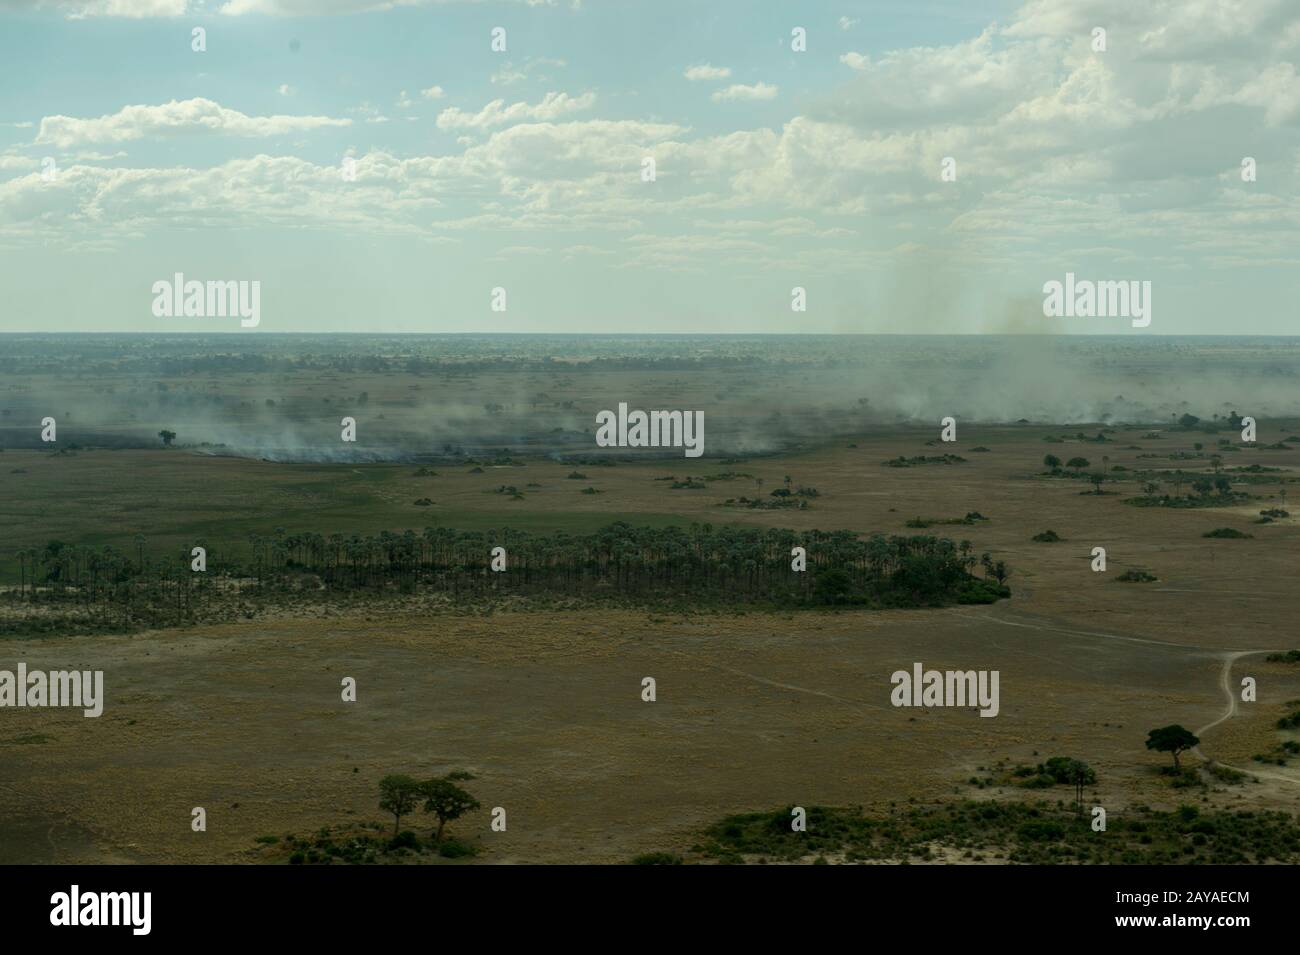 Luftbild der Landschaft mit Flächenbränden im Okavango-Delta in Botswana, das nach jahrelanger Tiefgang fast kein Wasser hat. Stockfoto